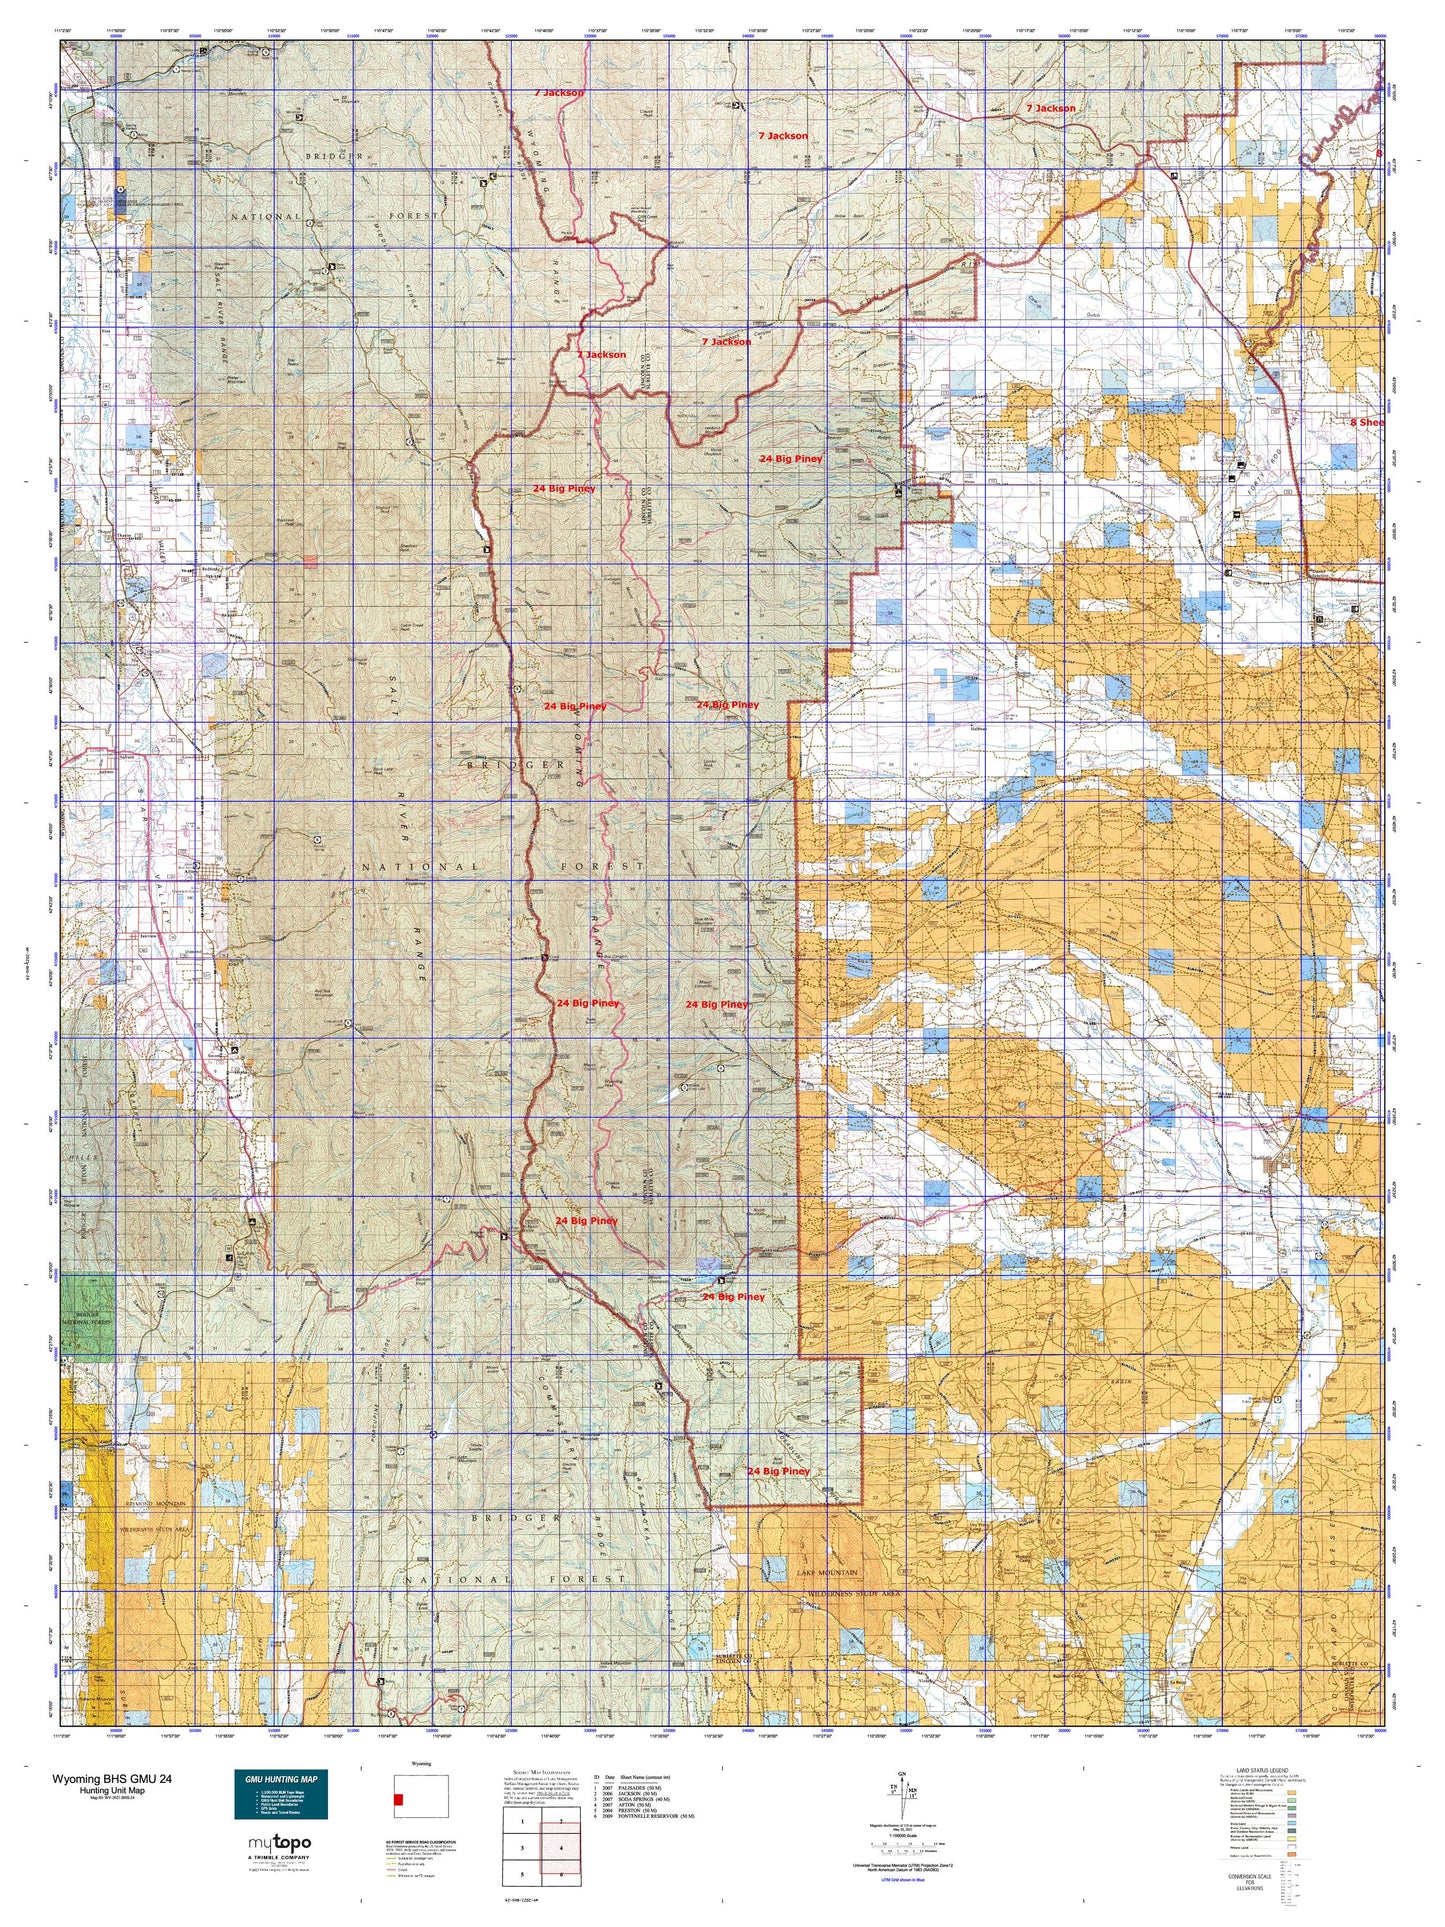 Wyoming Bighorn Sheep GMU 24 Map Image